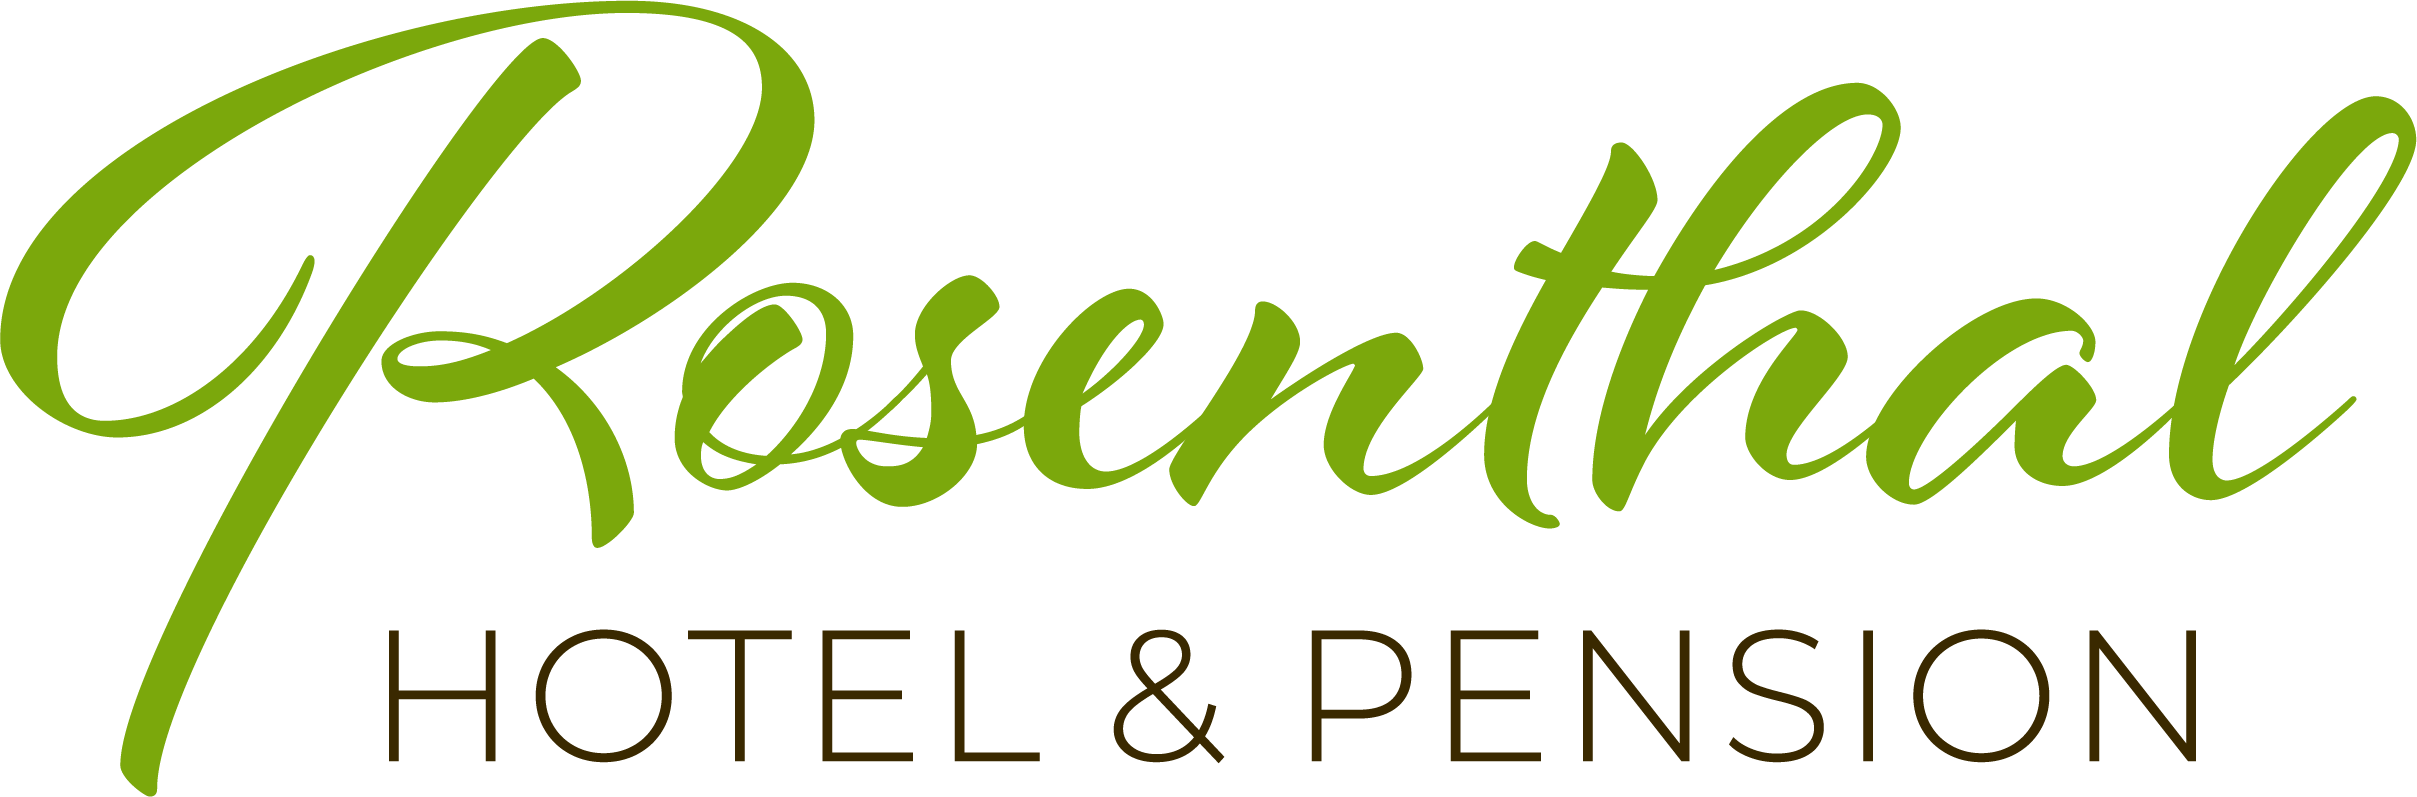 Logo Hotel und Pension Rosenthal im Flämin in Brandenburg